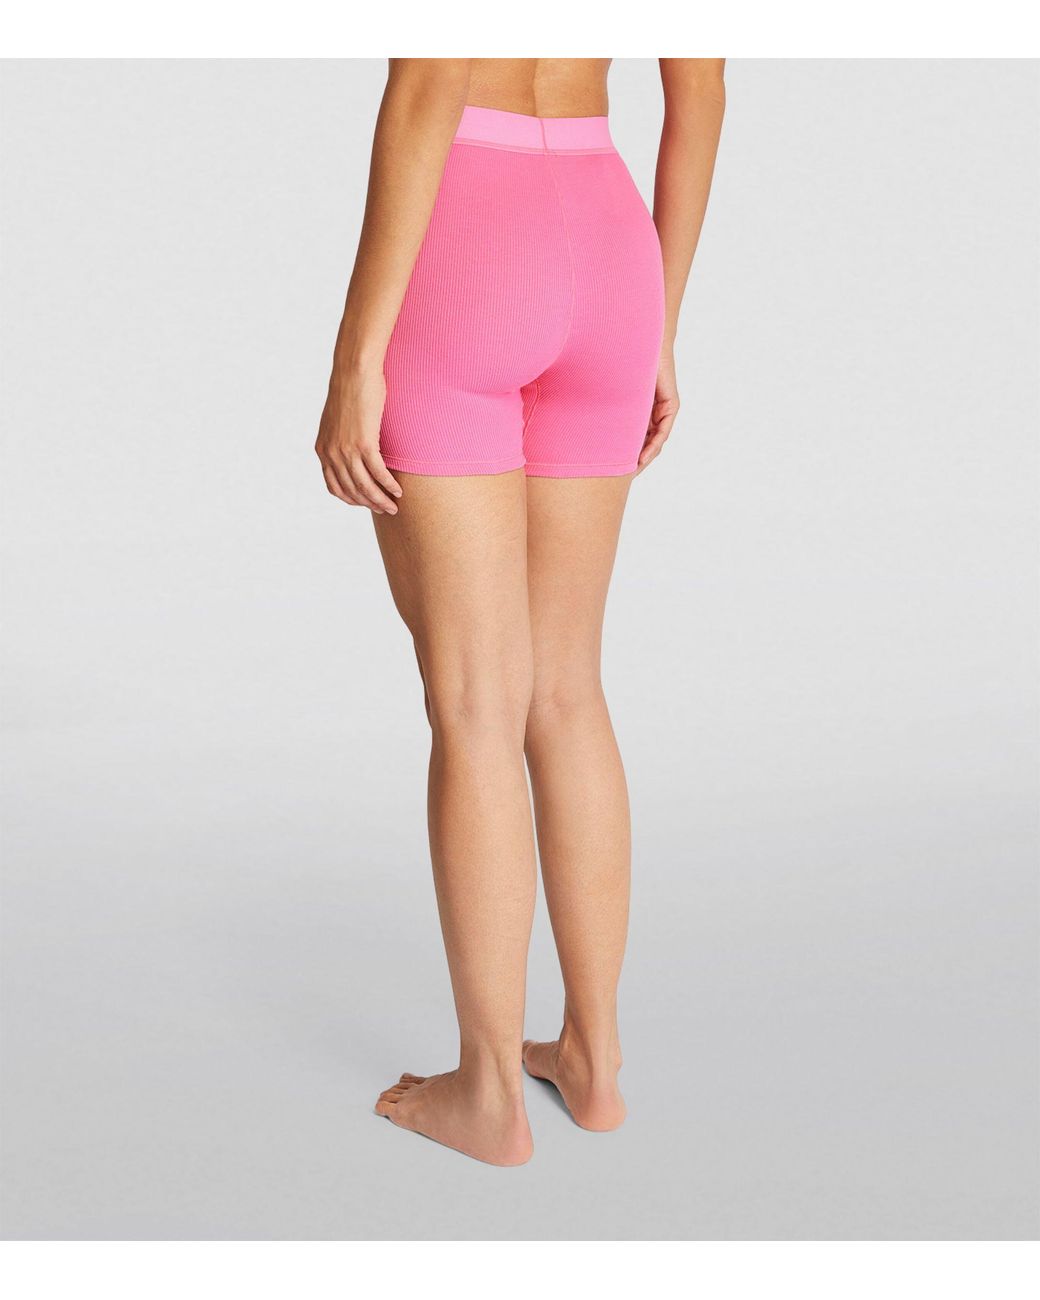 SKIMS, Shorts, Skims Cotton Fleece Shorts Short Cherry Blossom Pink M  Medium Nwt New Kardashian